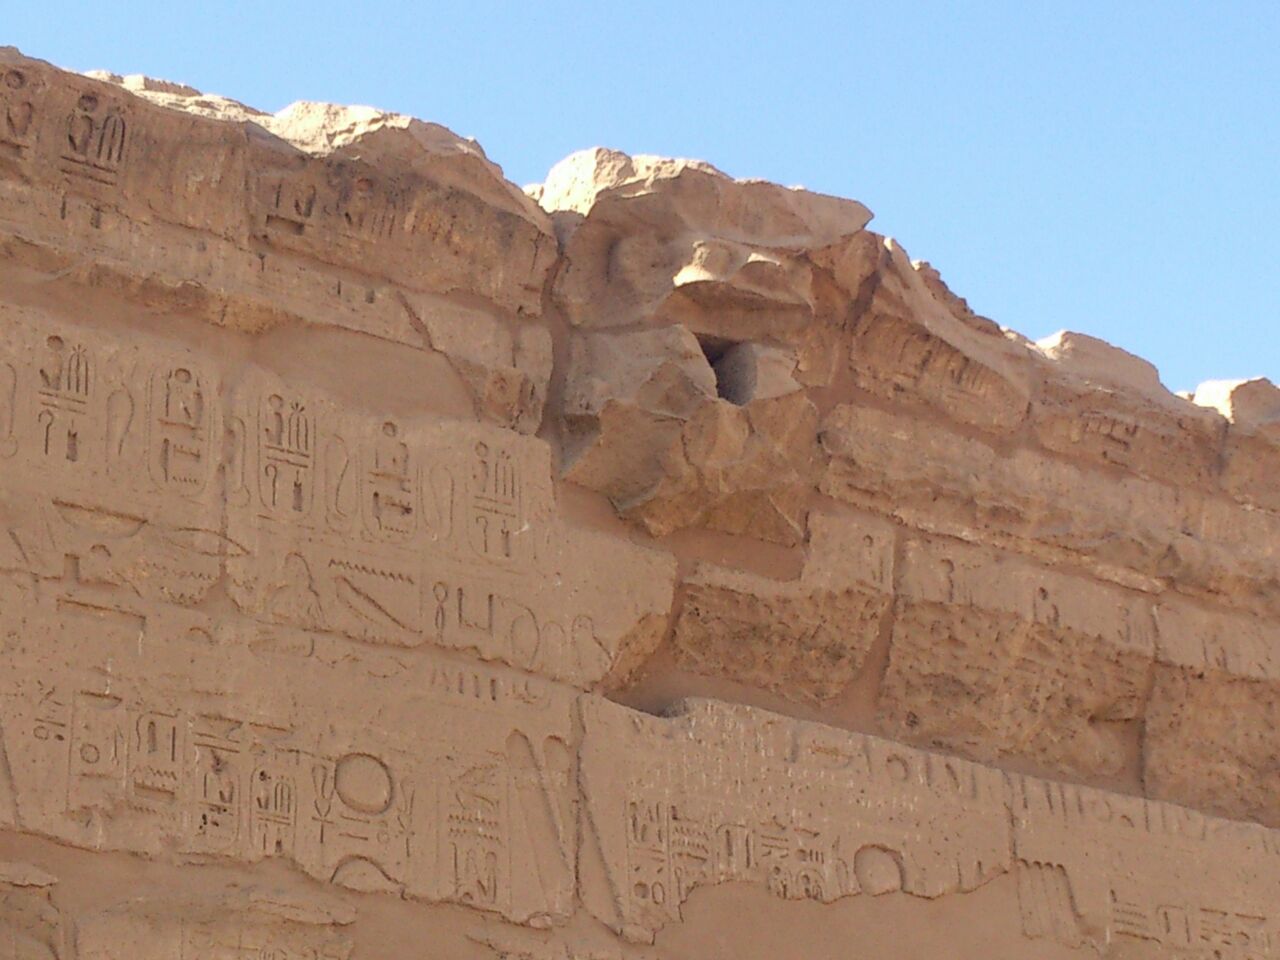 النقوش الفرعونية متراصة بجوار أحد الميازيب لتصريف المياة بالكرنك